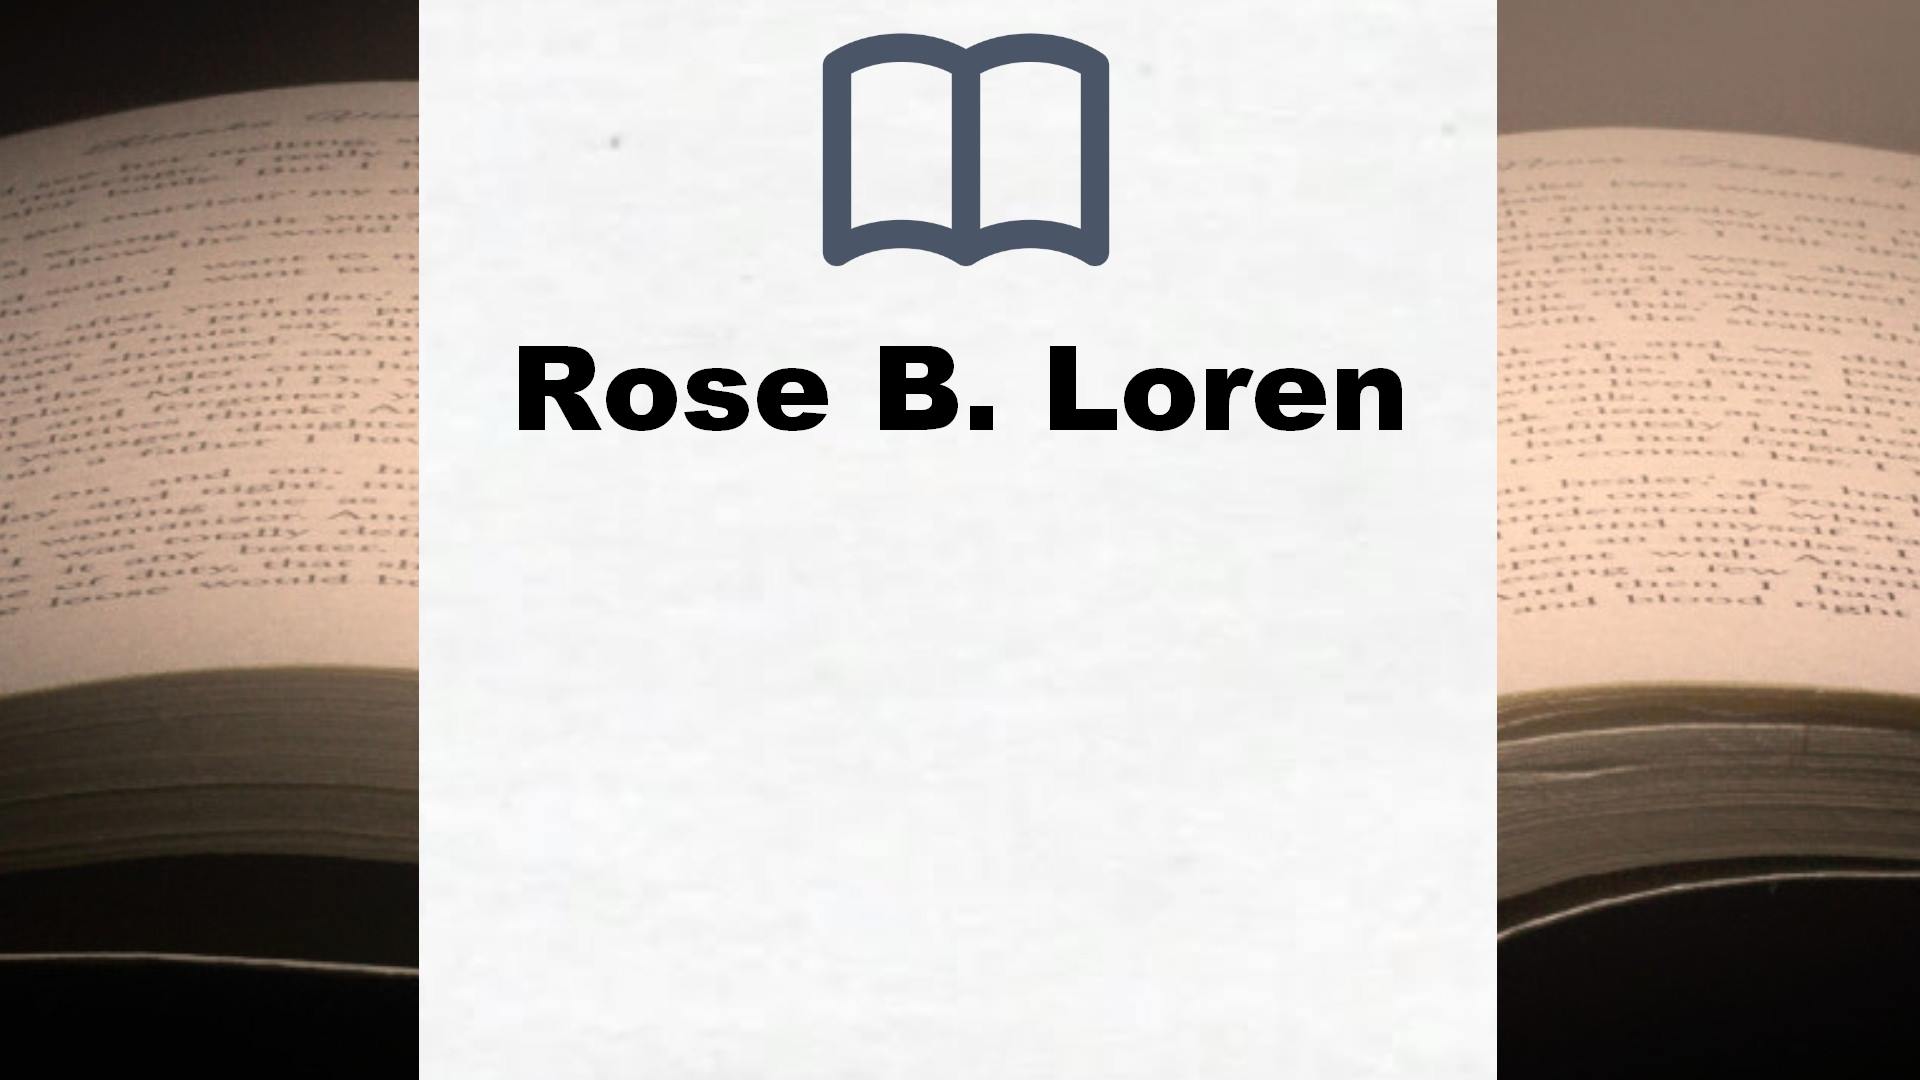 Libros Rose B. Loren